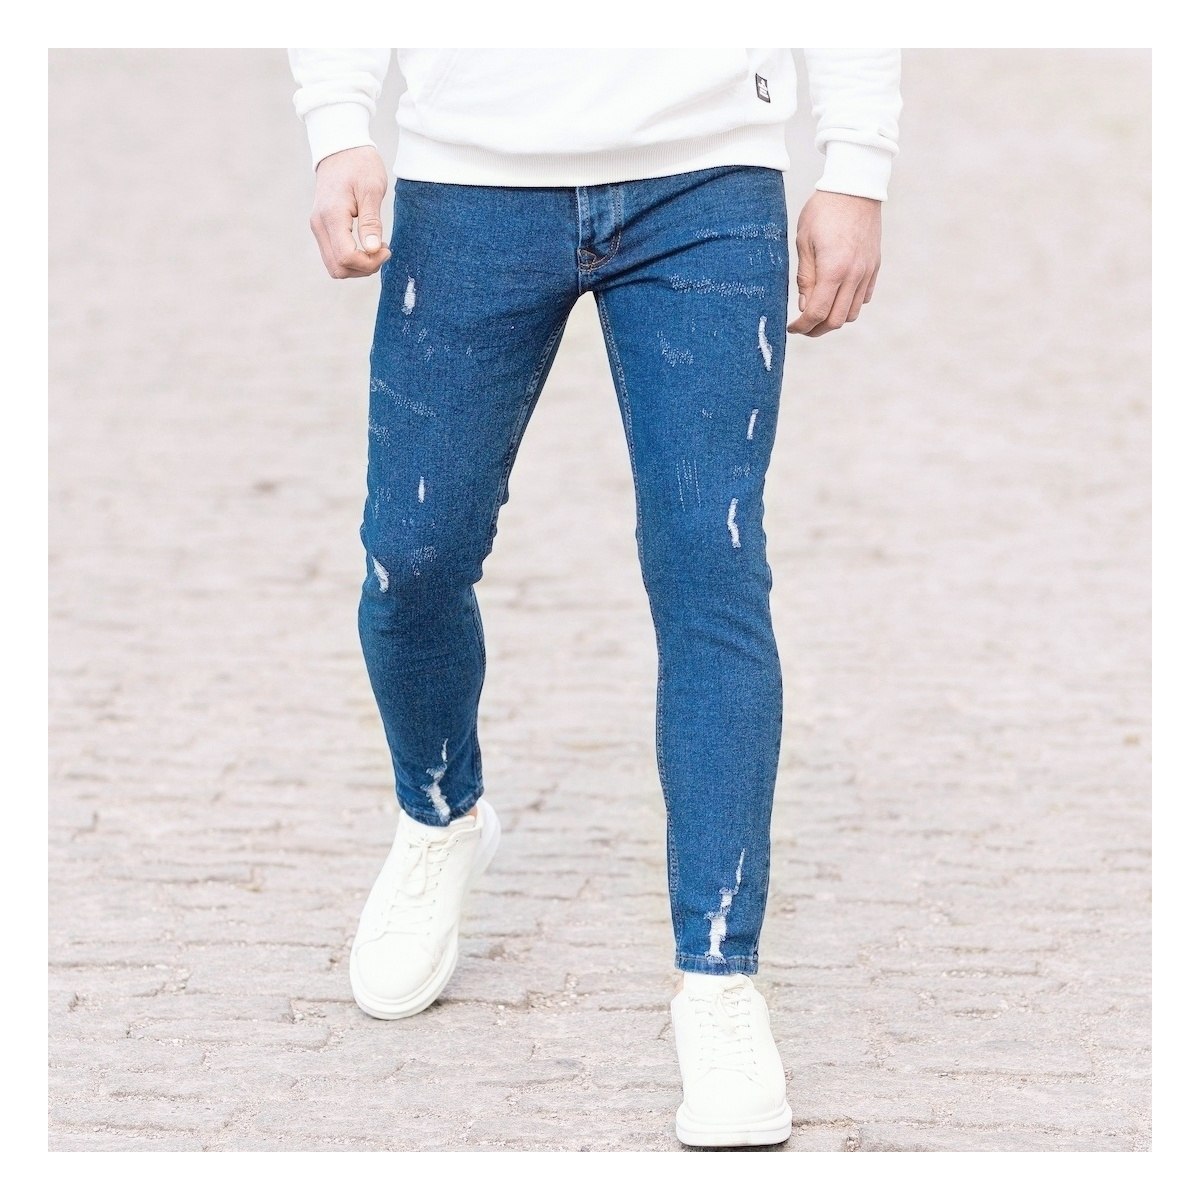 Herren Jeans mit Rissen in dunkelblau | Martin Valen